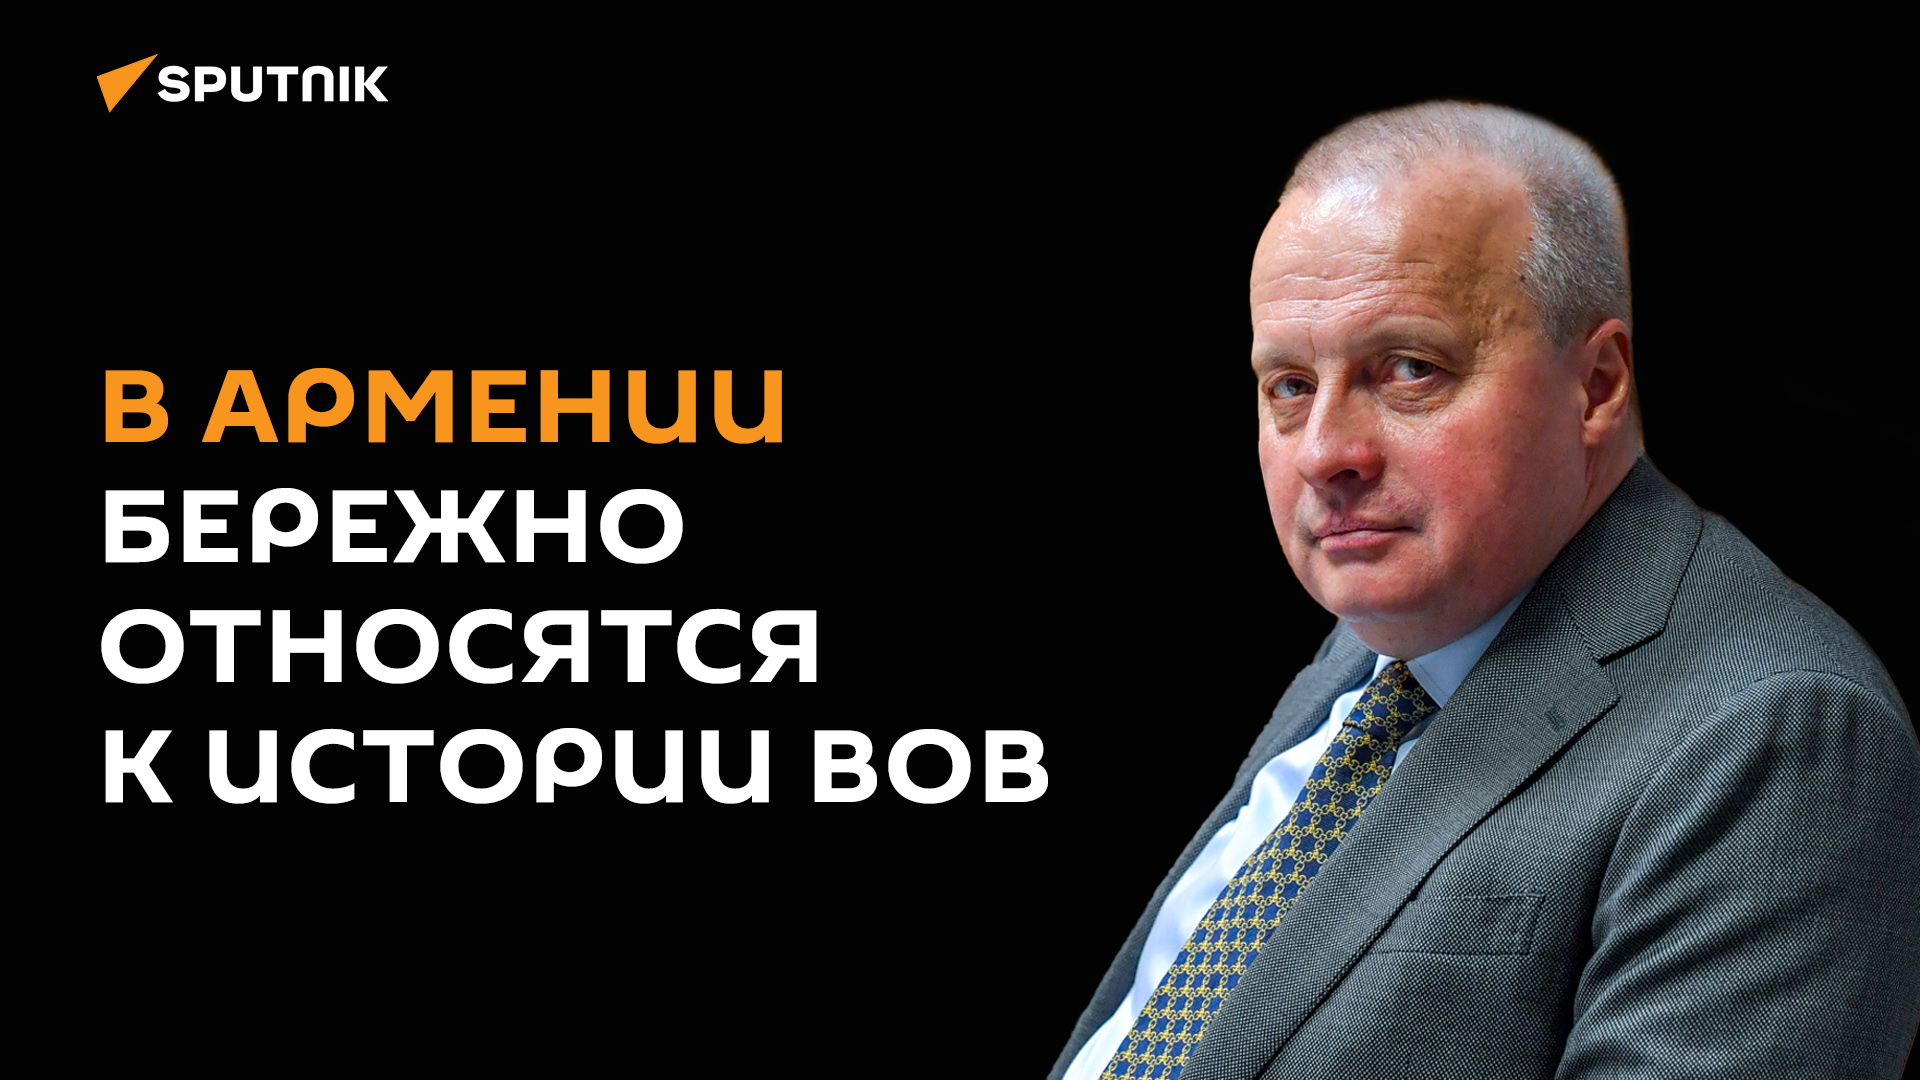 Вместе нам удастся не допустить искажения истории: посол РФ в Армении Сергей Копыркин